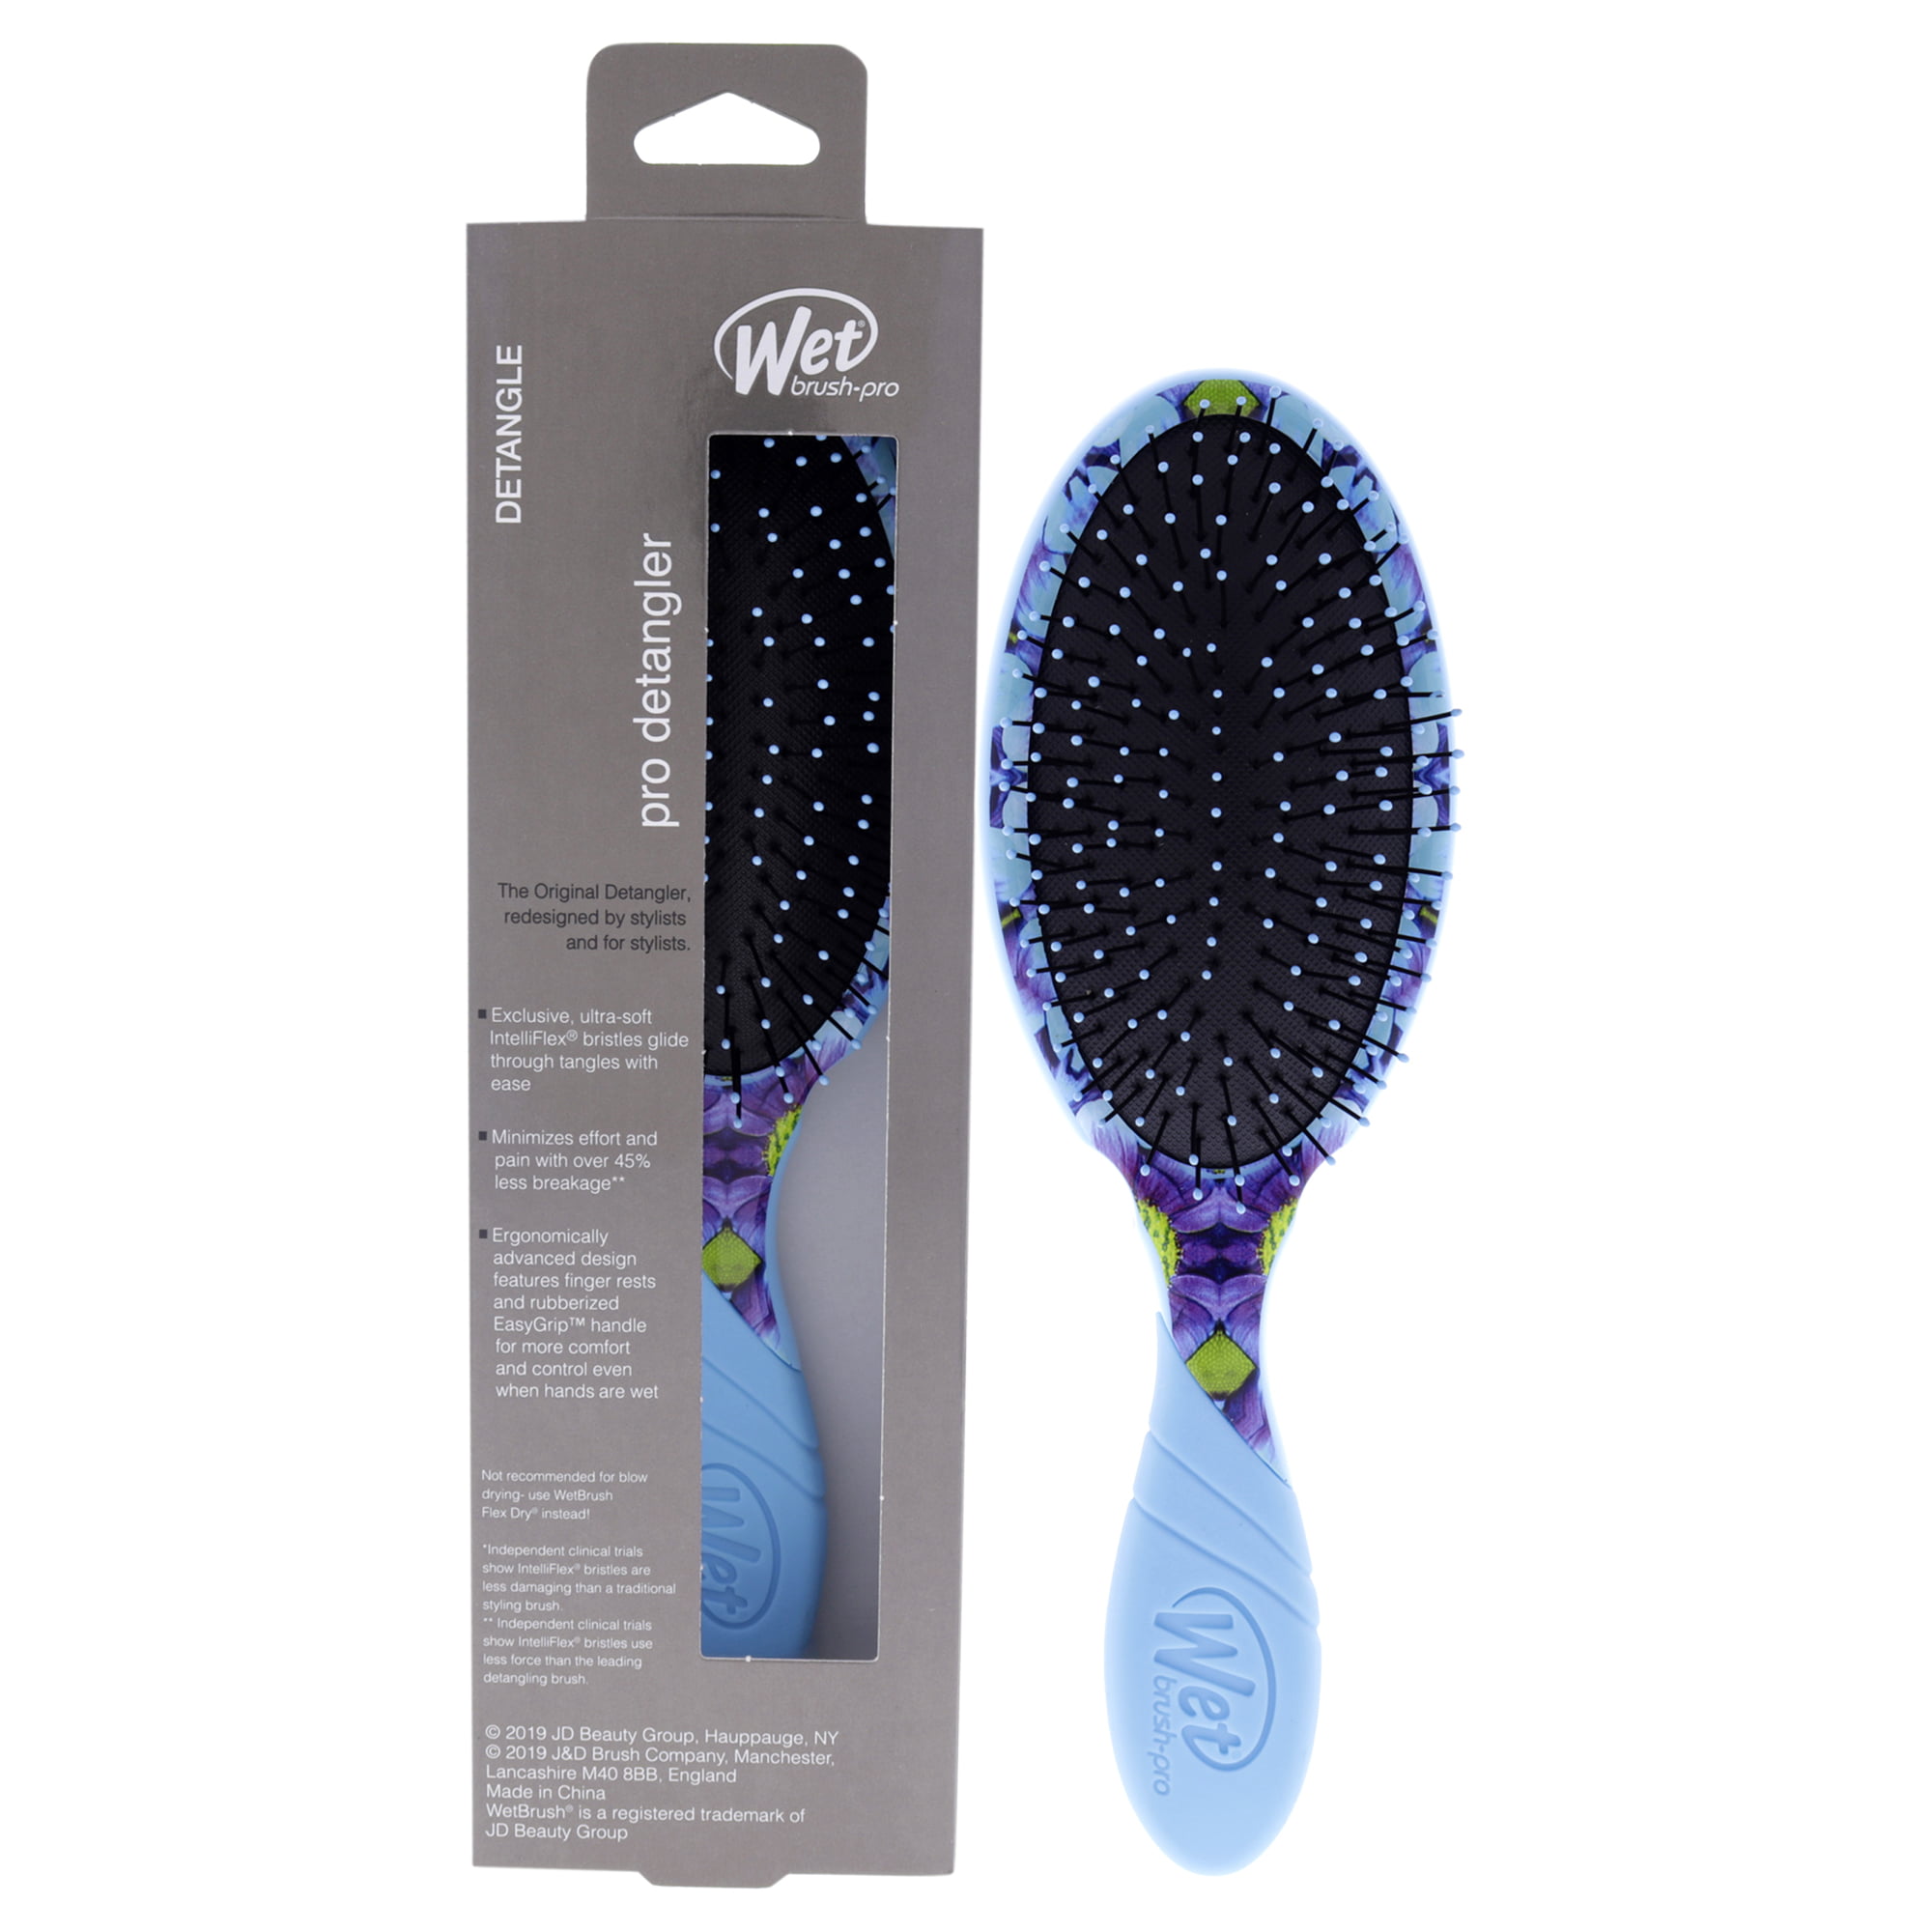 Wet Brush Pro Detangler Kaleidoscope Dreams Brush Blue Floral 1 Pc Hair Brush Walmart Com